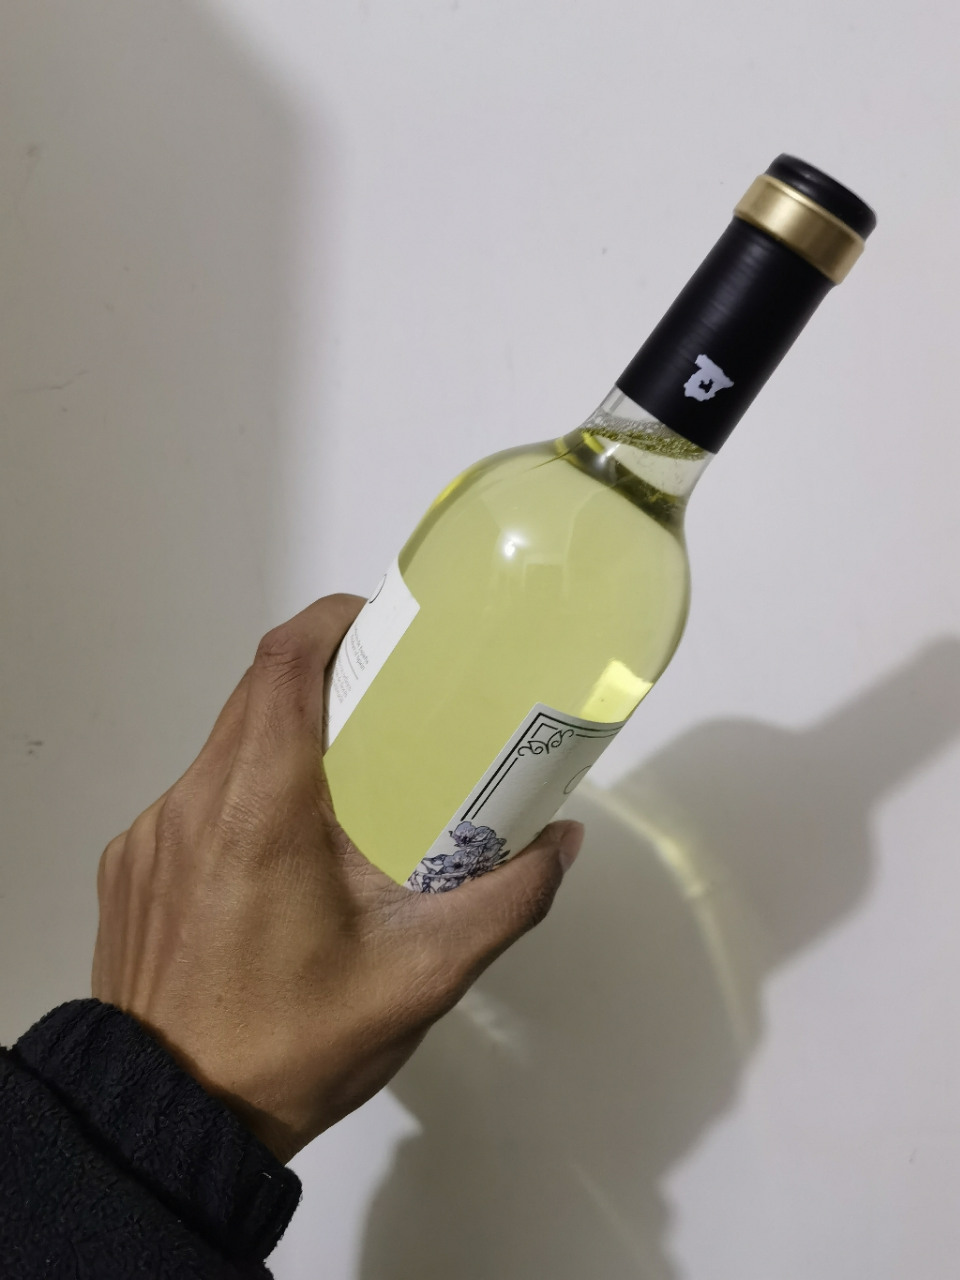 西班牙原瓶原装进口达颜自然之声长相思干白葡萄酒750ml晒单图